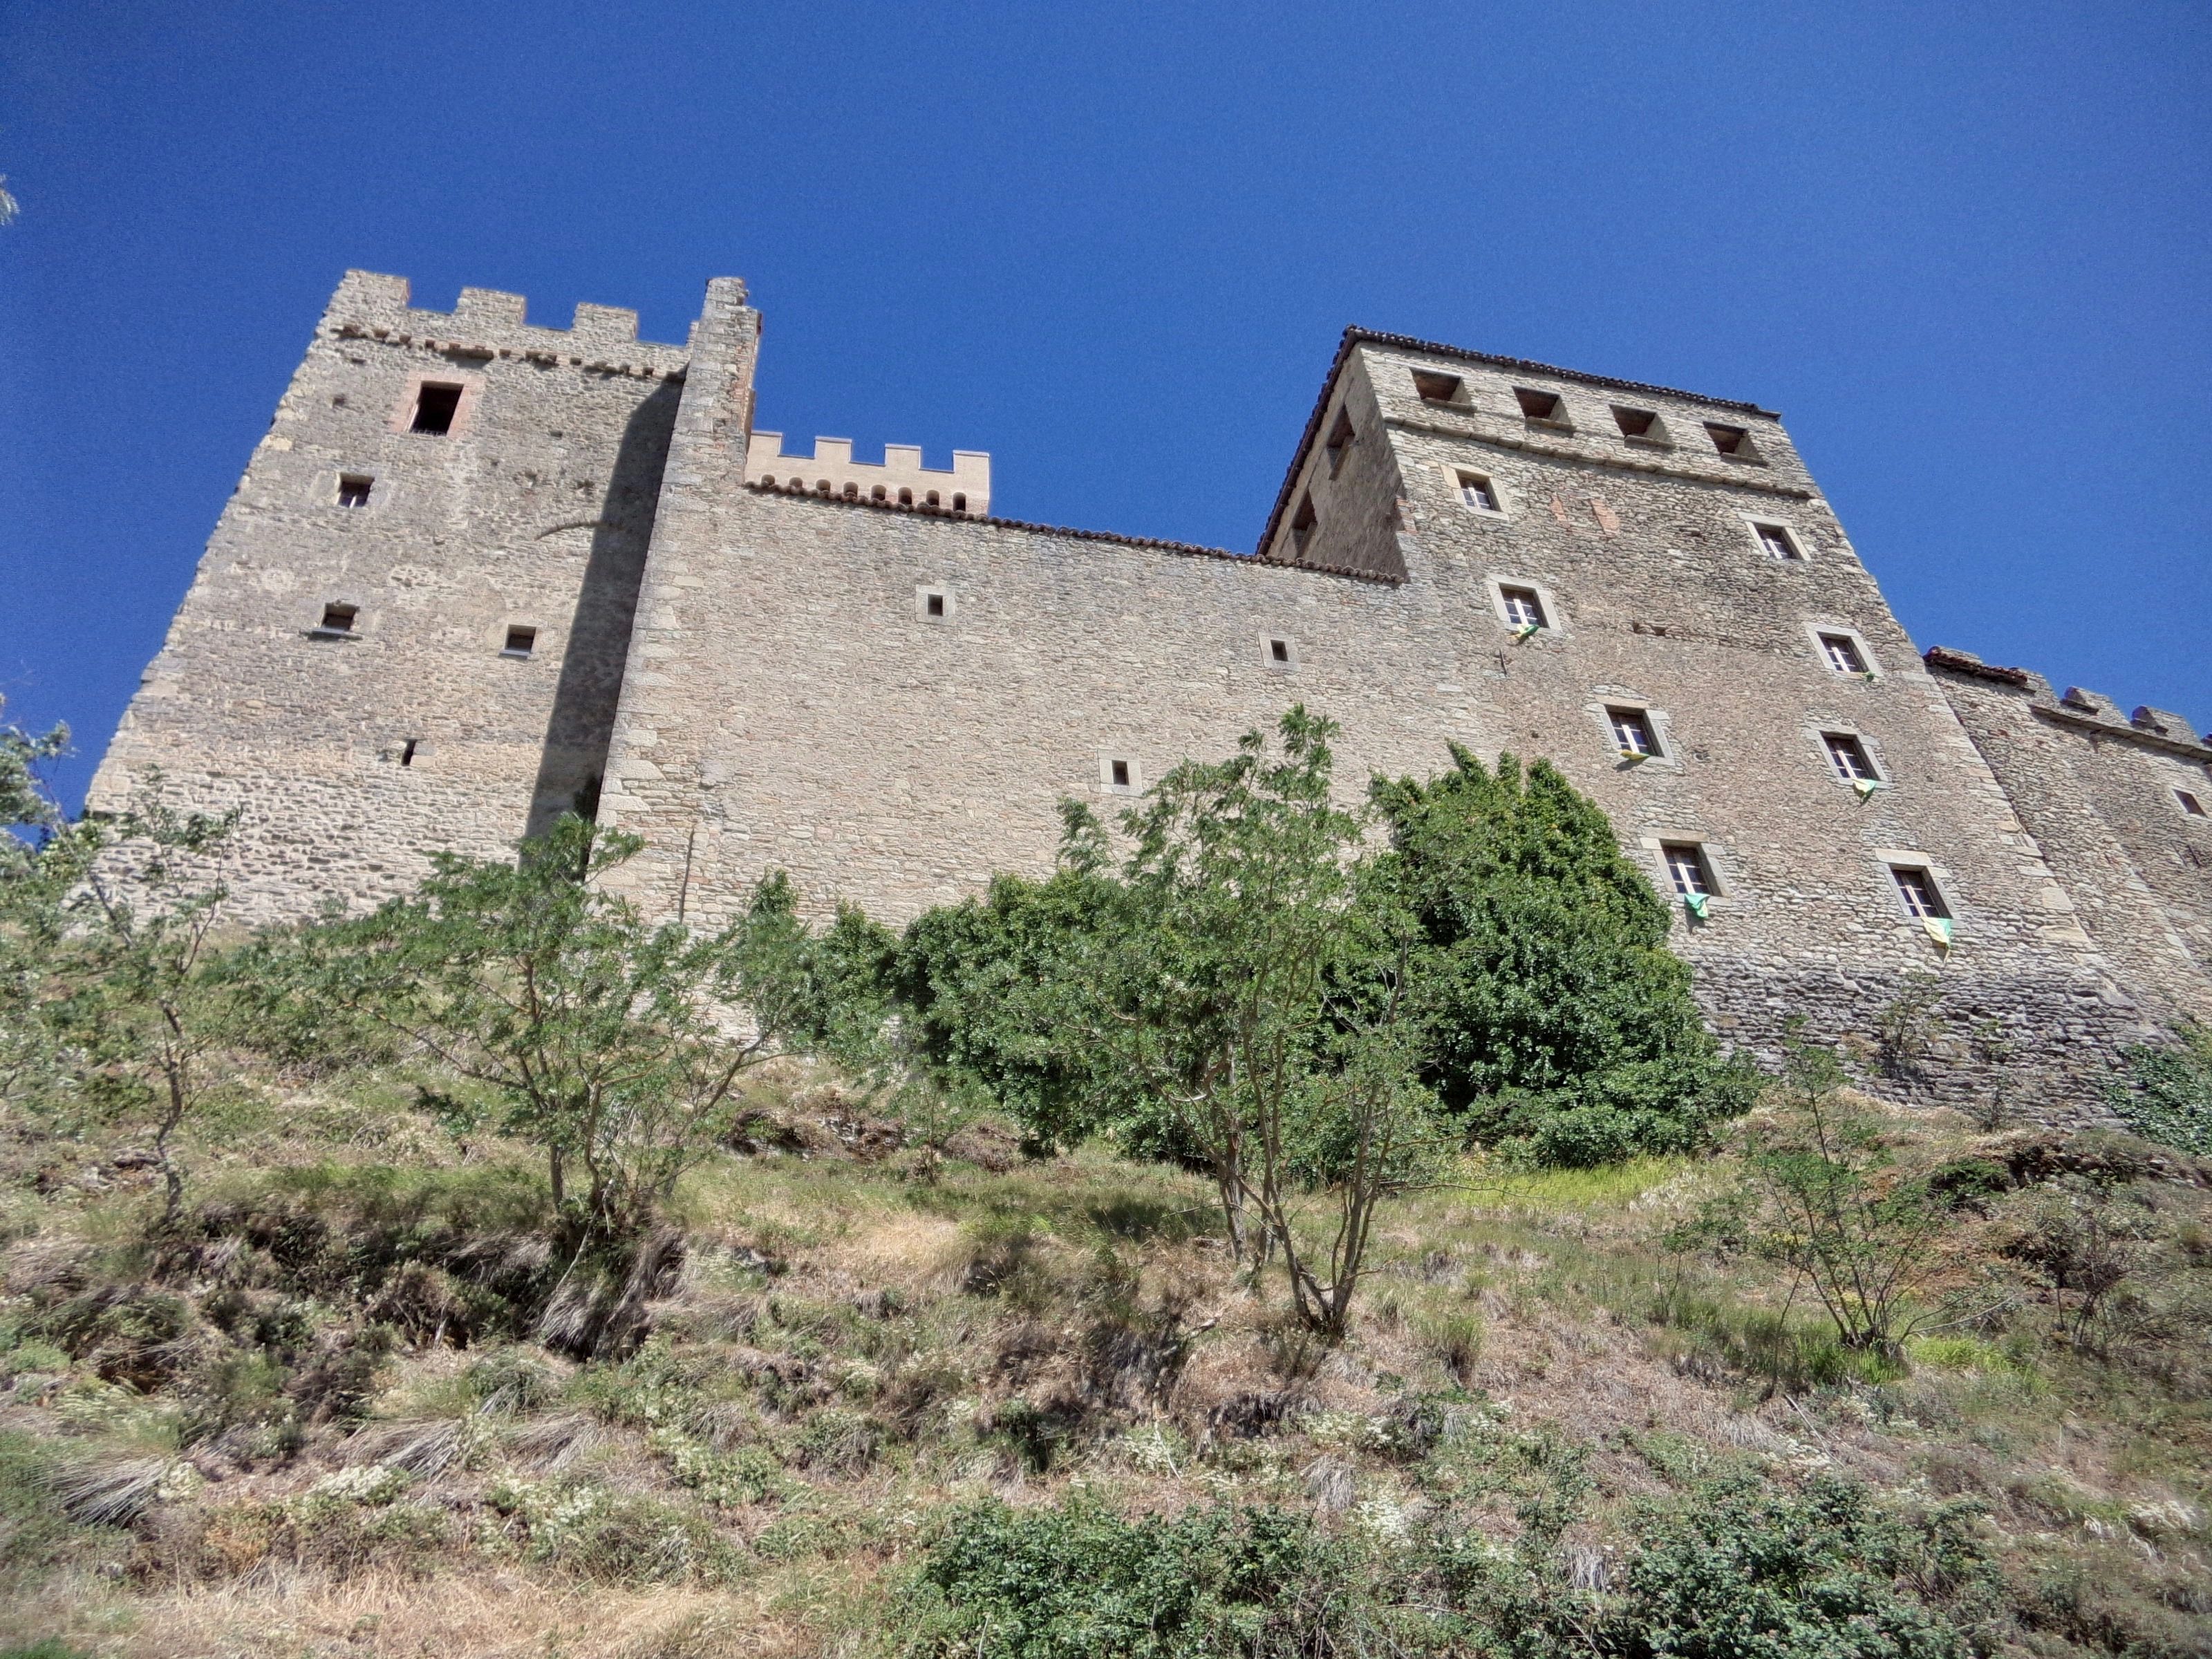 Montecuccolo castle, Pavullo nel Frignano MO